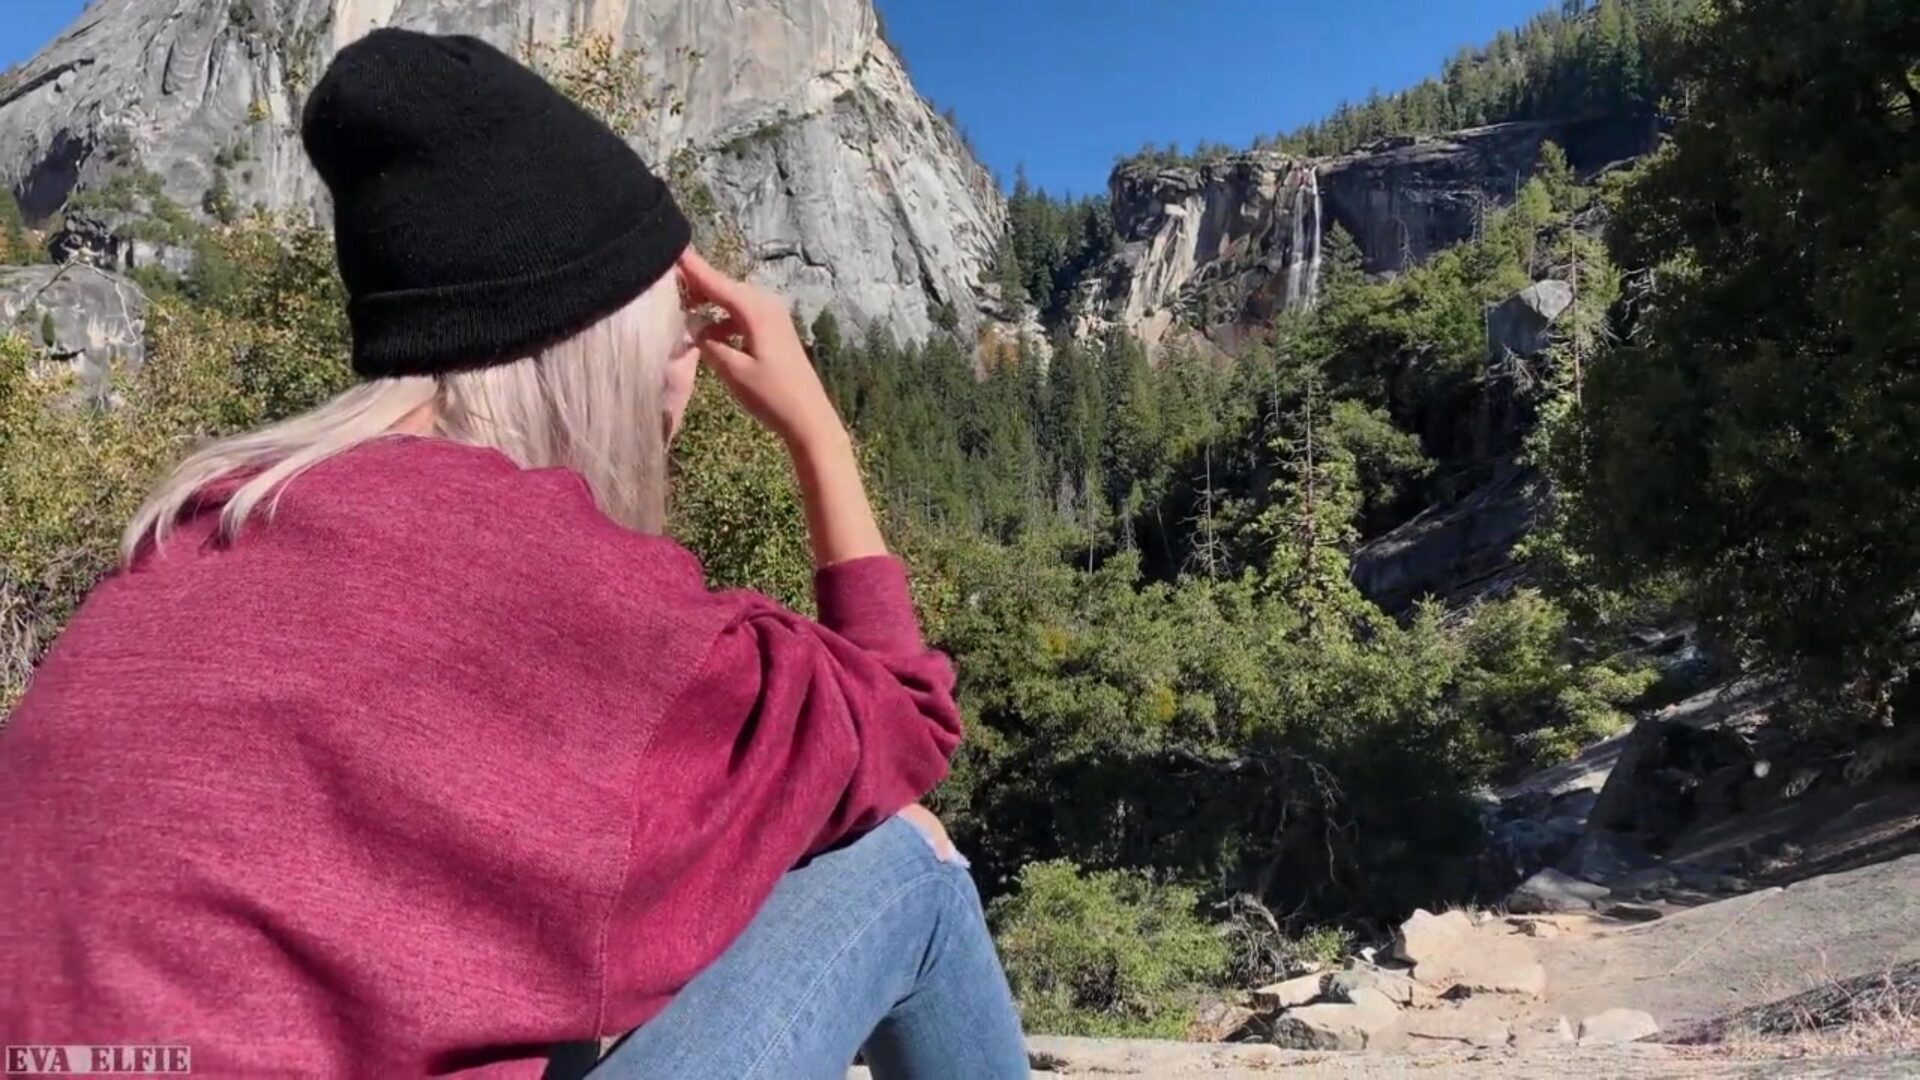 wędrówka po Yosemite kończy się publicznym lodzikiem uroczej nastolatki - Evy Elfie